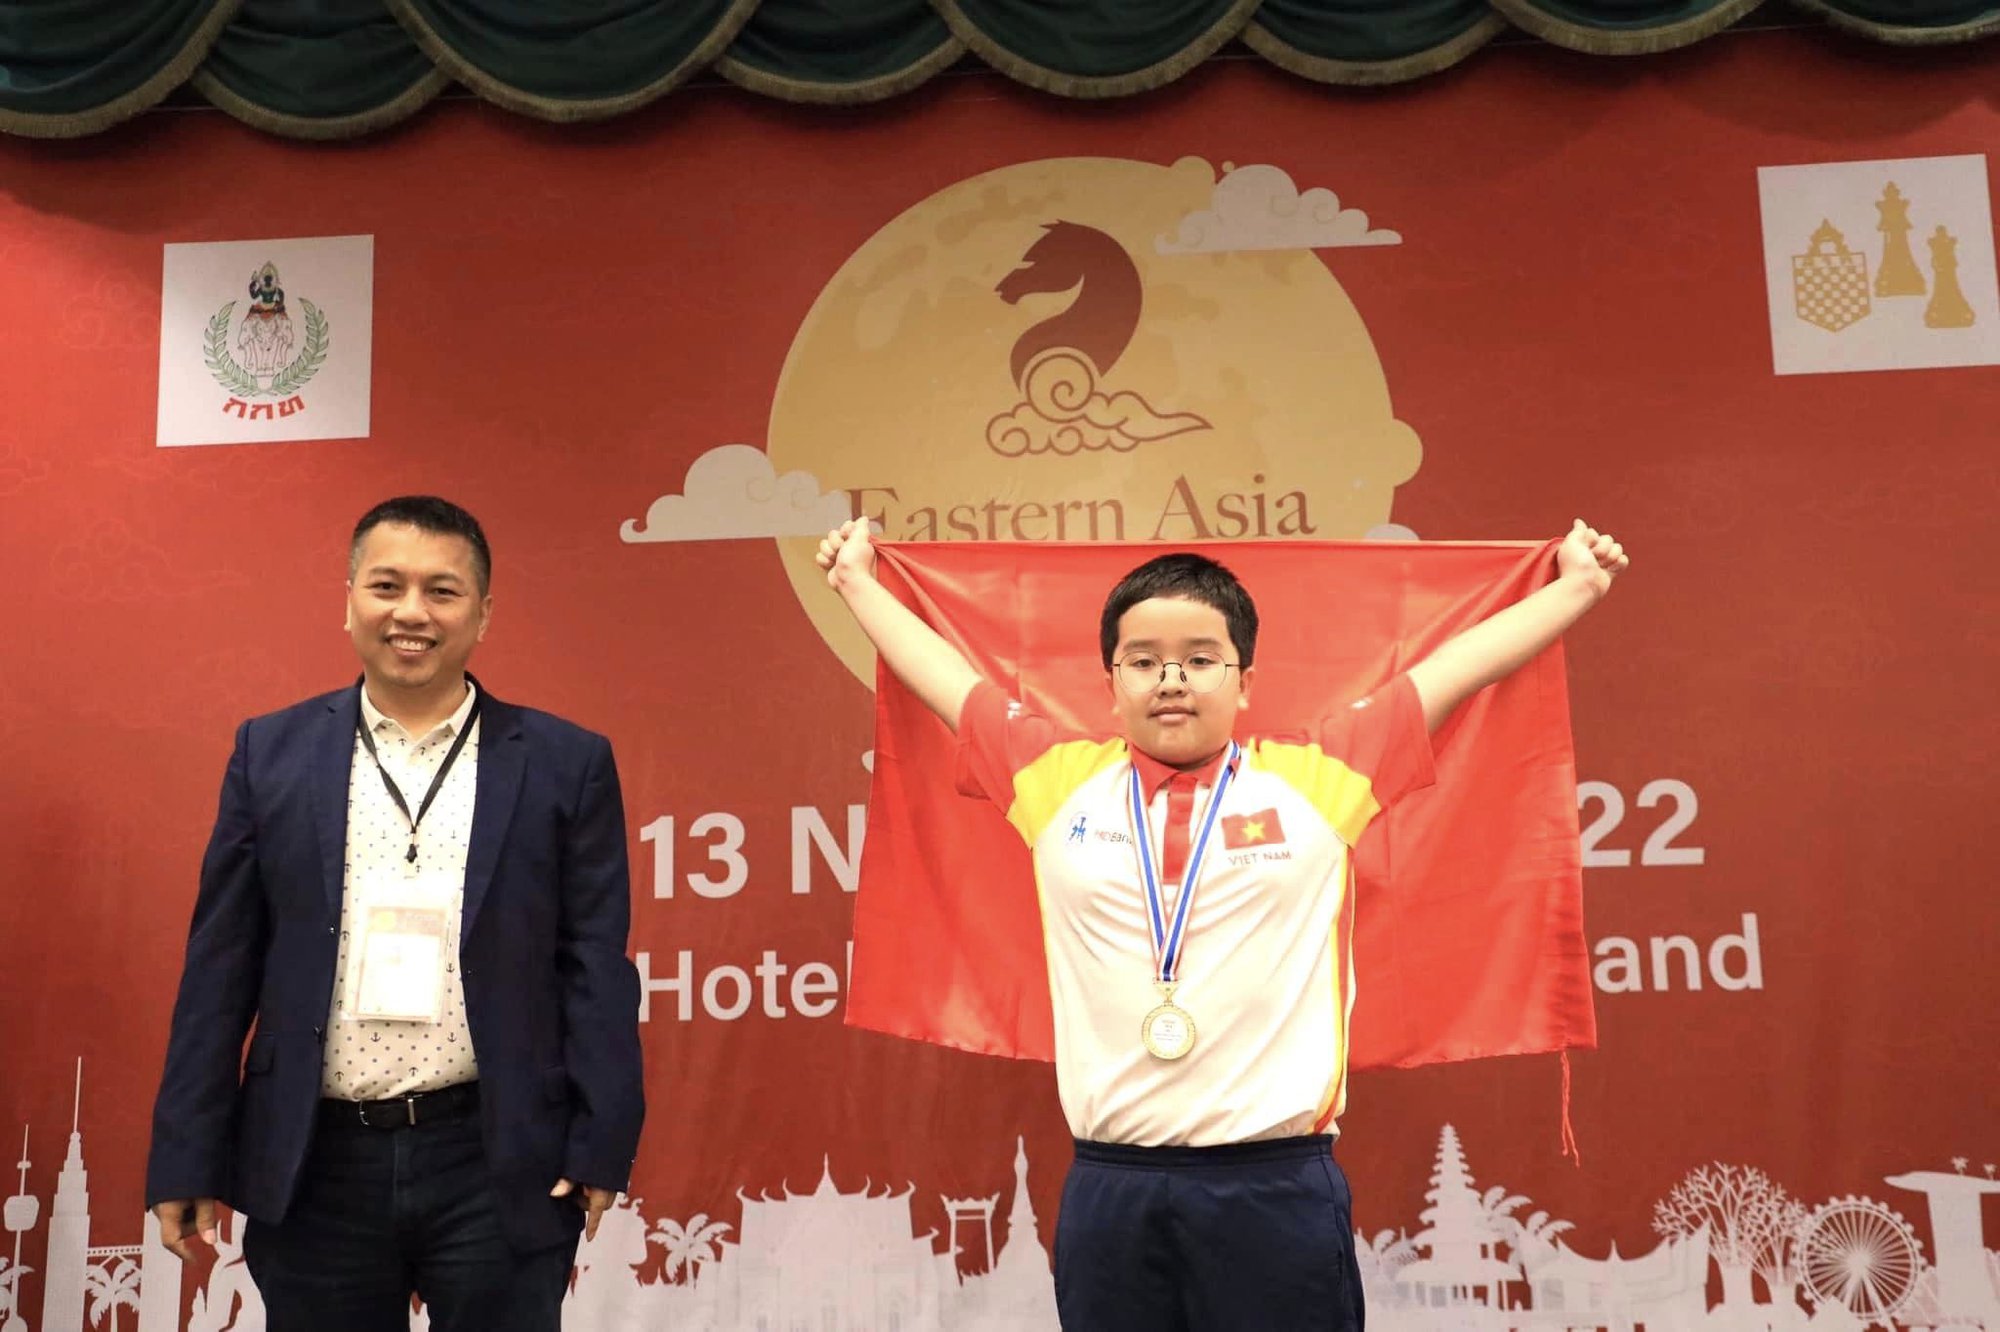 Cậu bé 11 tuổi ở Hà Nội: Không đếm xuể huy chương cờ vua, siêu tiếng Anh và đọc thành thạo lúc 5 tuổi - Ảnh 3.